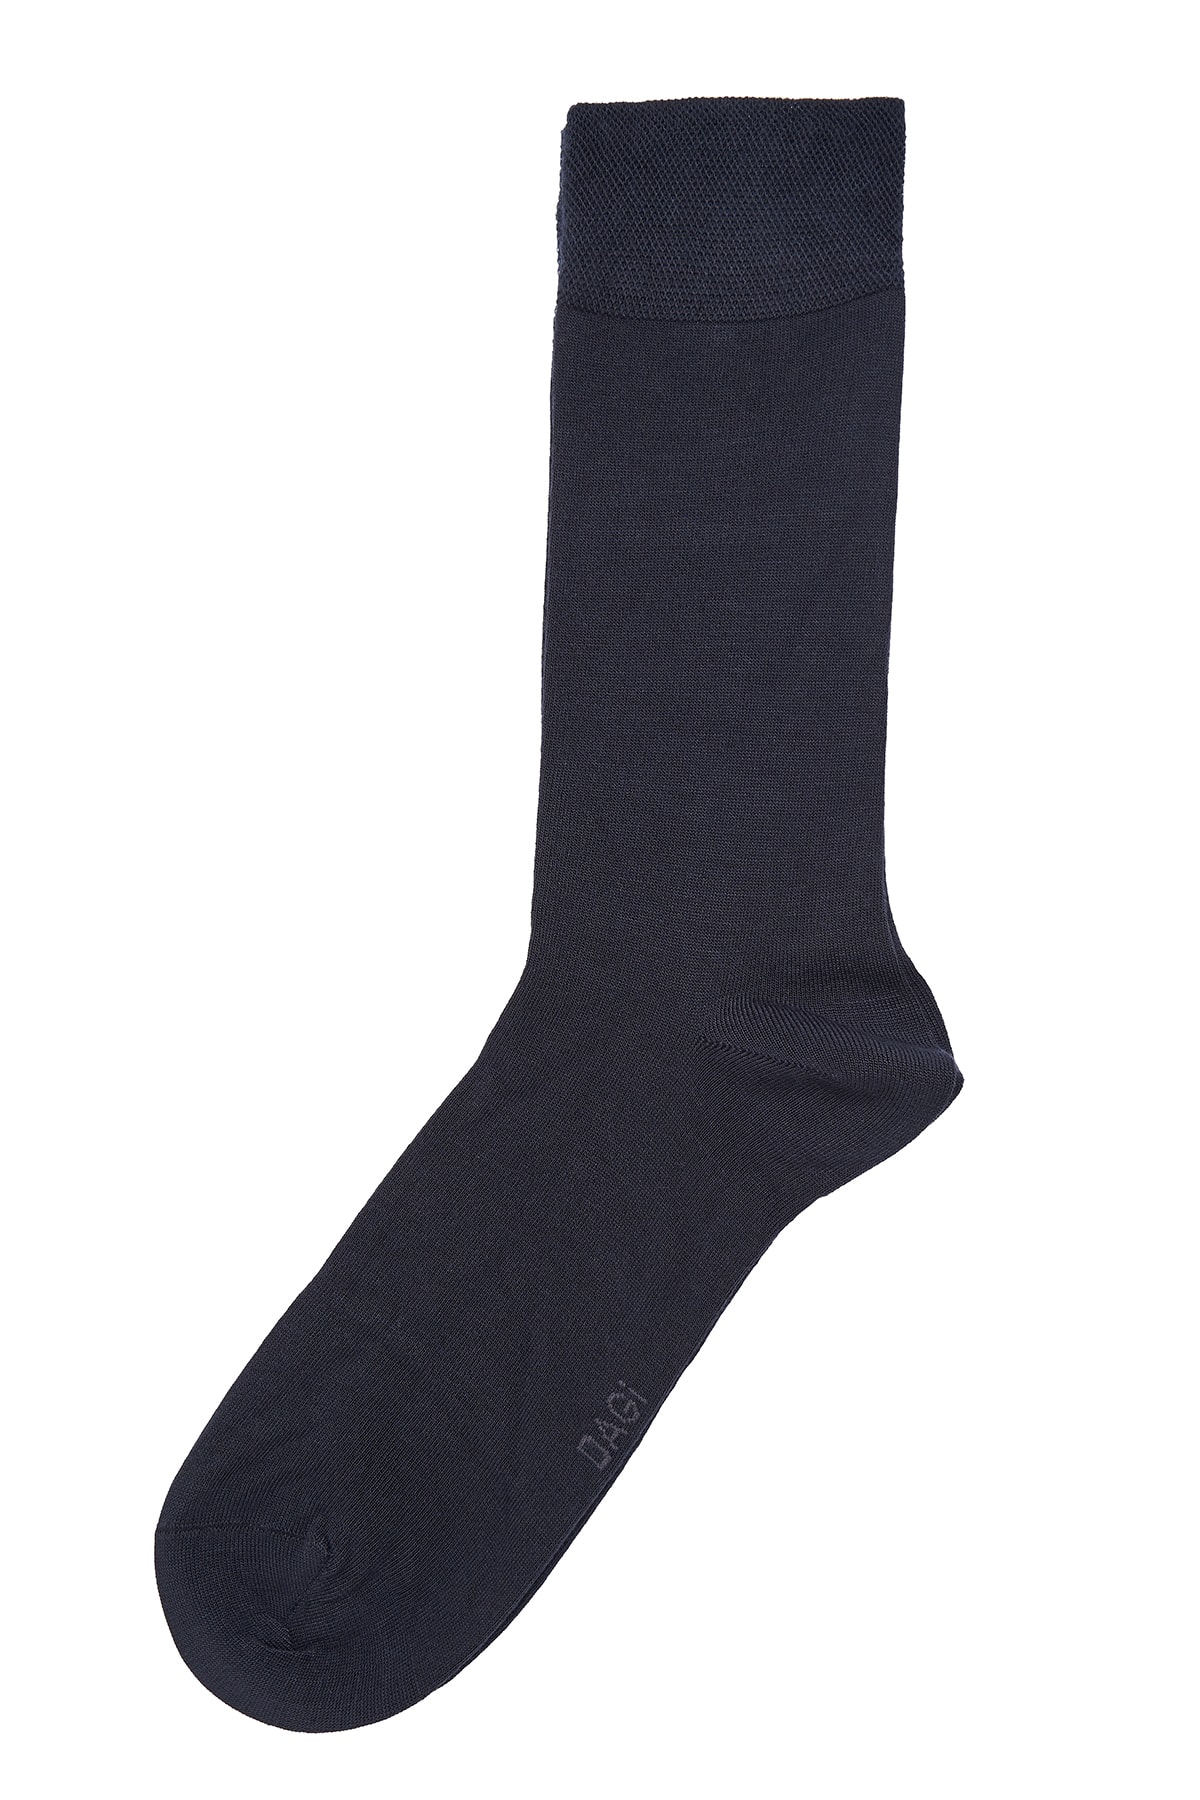 Dagi Anthracite Mercerized Socks